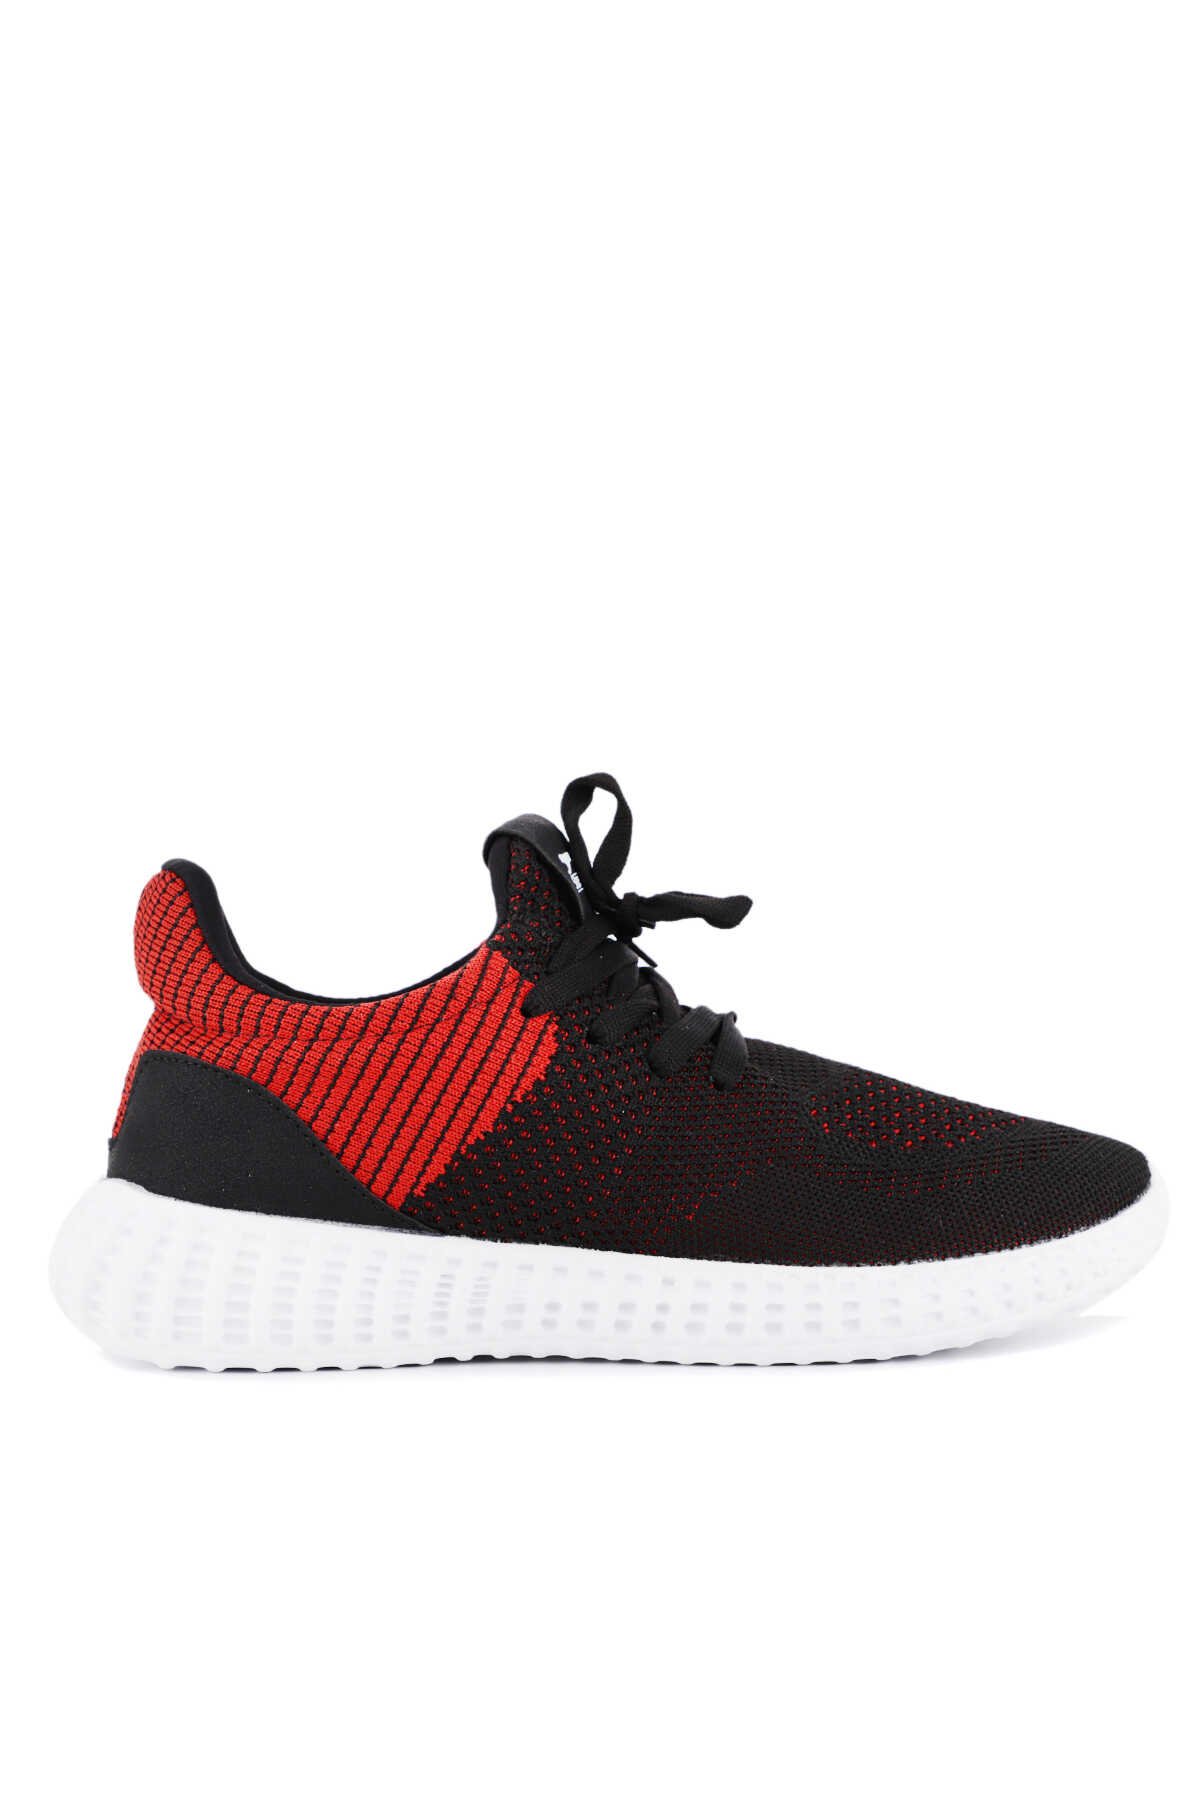 Slazenger - Slazenger ATOMIC Sneaker Erkek Ayakkabı Siyah / Kırmızı